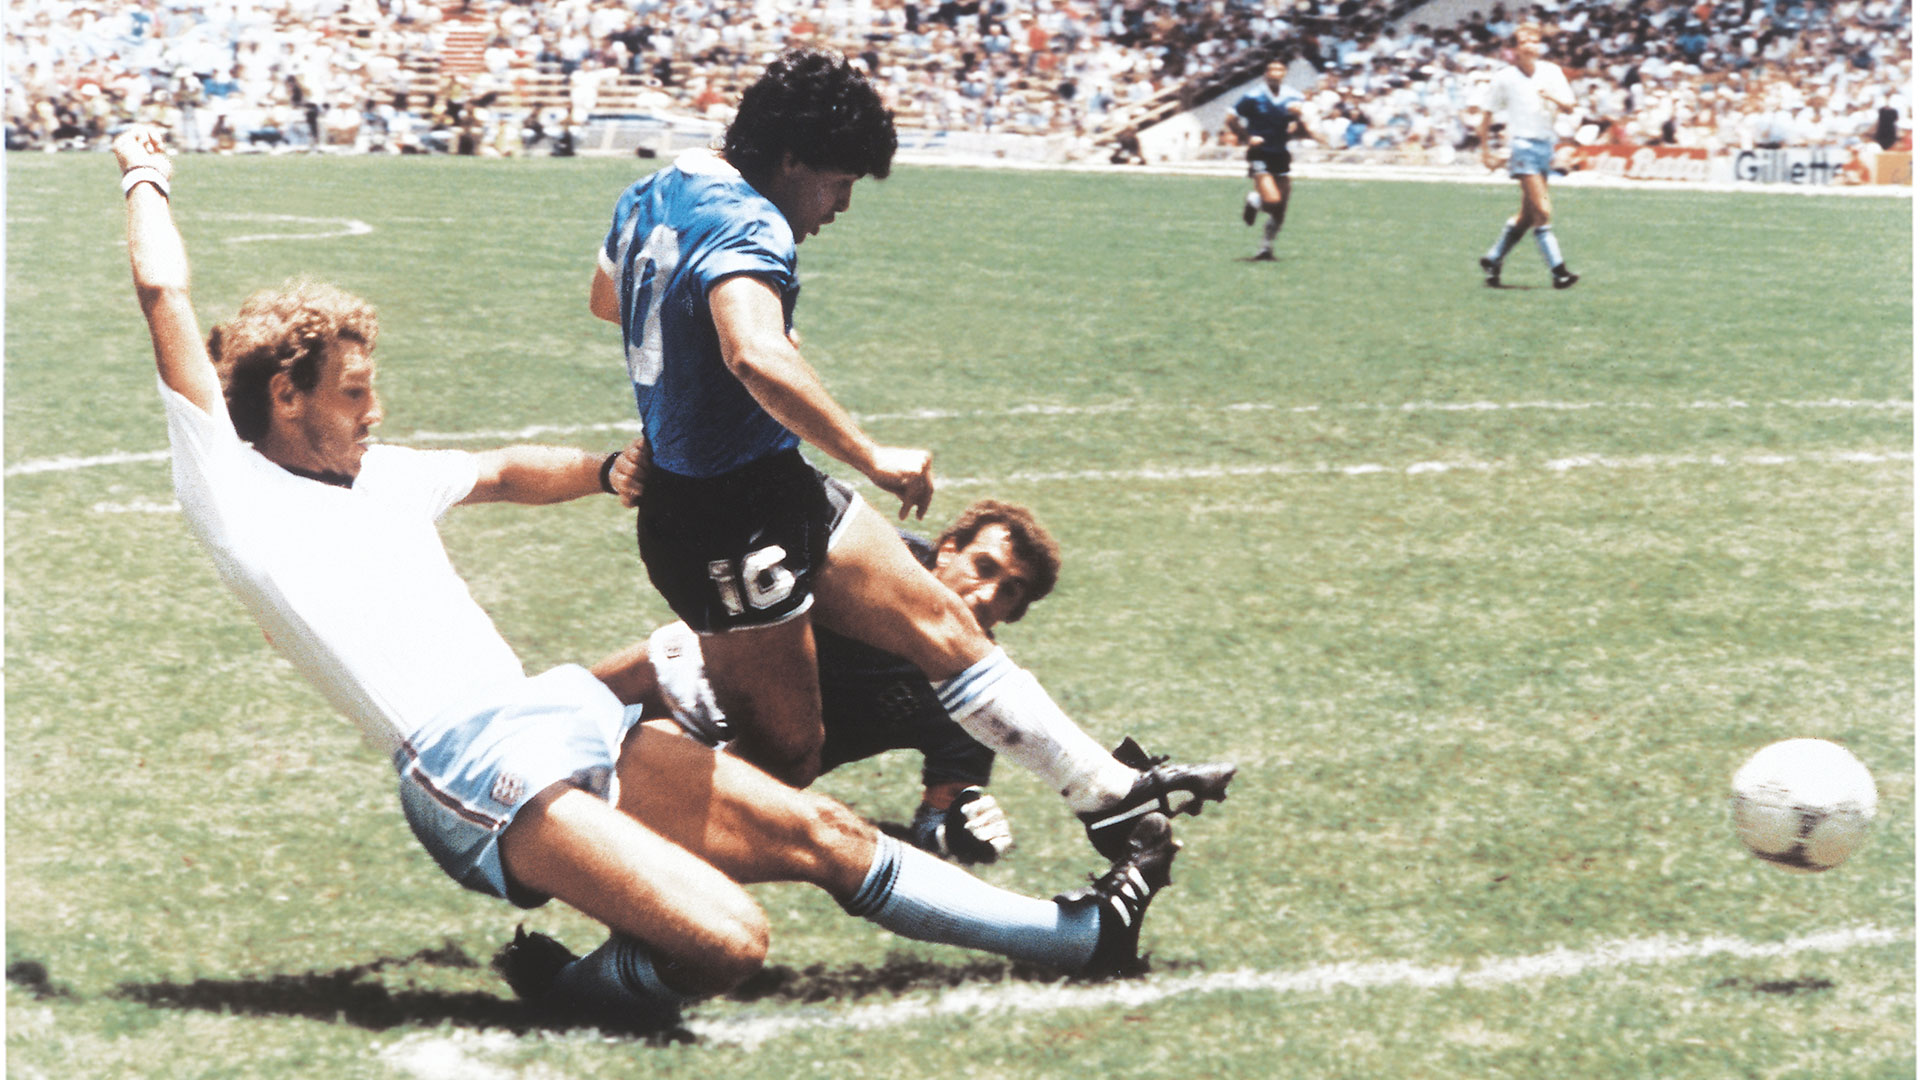 El momento preciso de la definición de Diego para rubricar "el gol del siglo" (Getty Images)